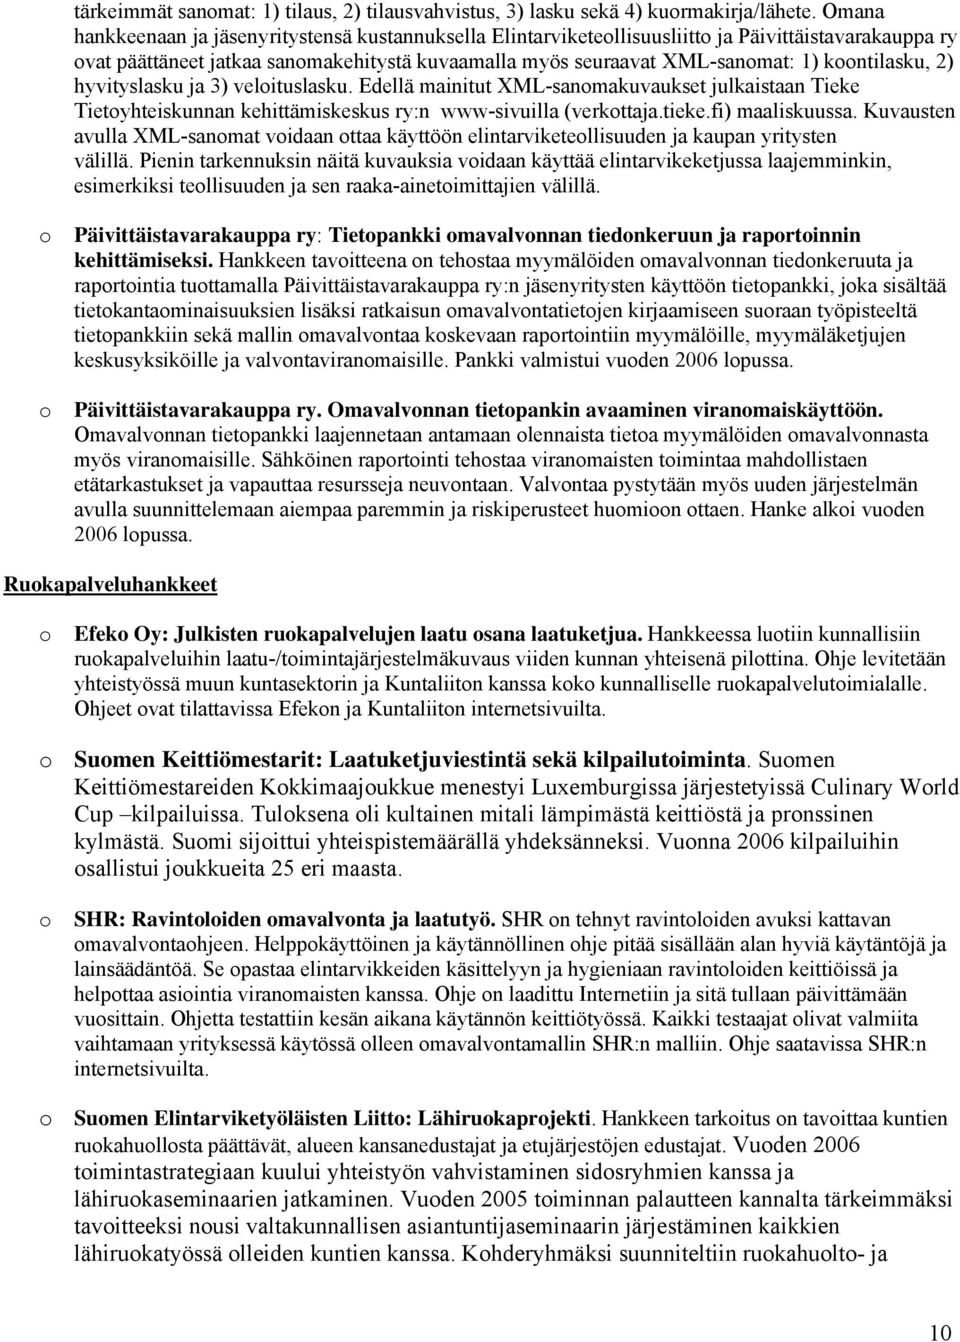 hyvityslasku ja 3) velituslasku. Edellä mainitut XML-sanmakuvaukset julkaistaan Tieke Tietyhteiskunnan kehittämiskeskus ry:n www-sivuilla (verkttaja.tieke.fi) maaliskuussa.